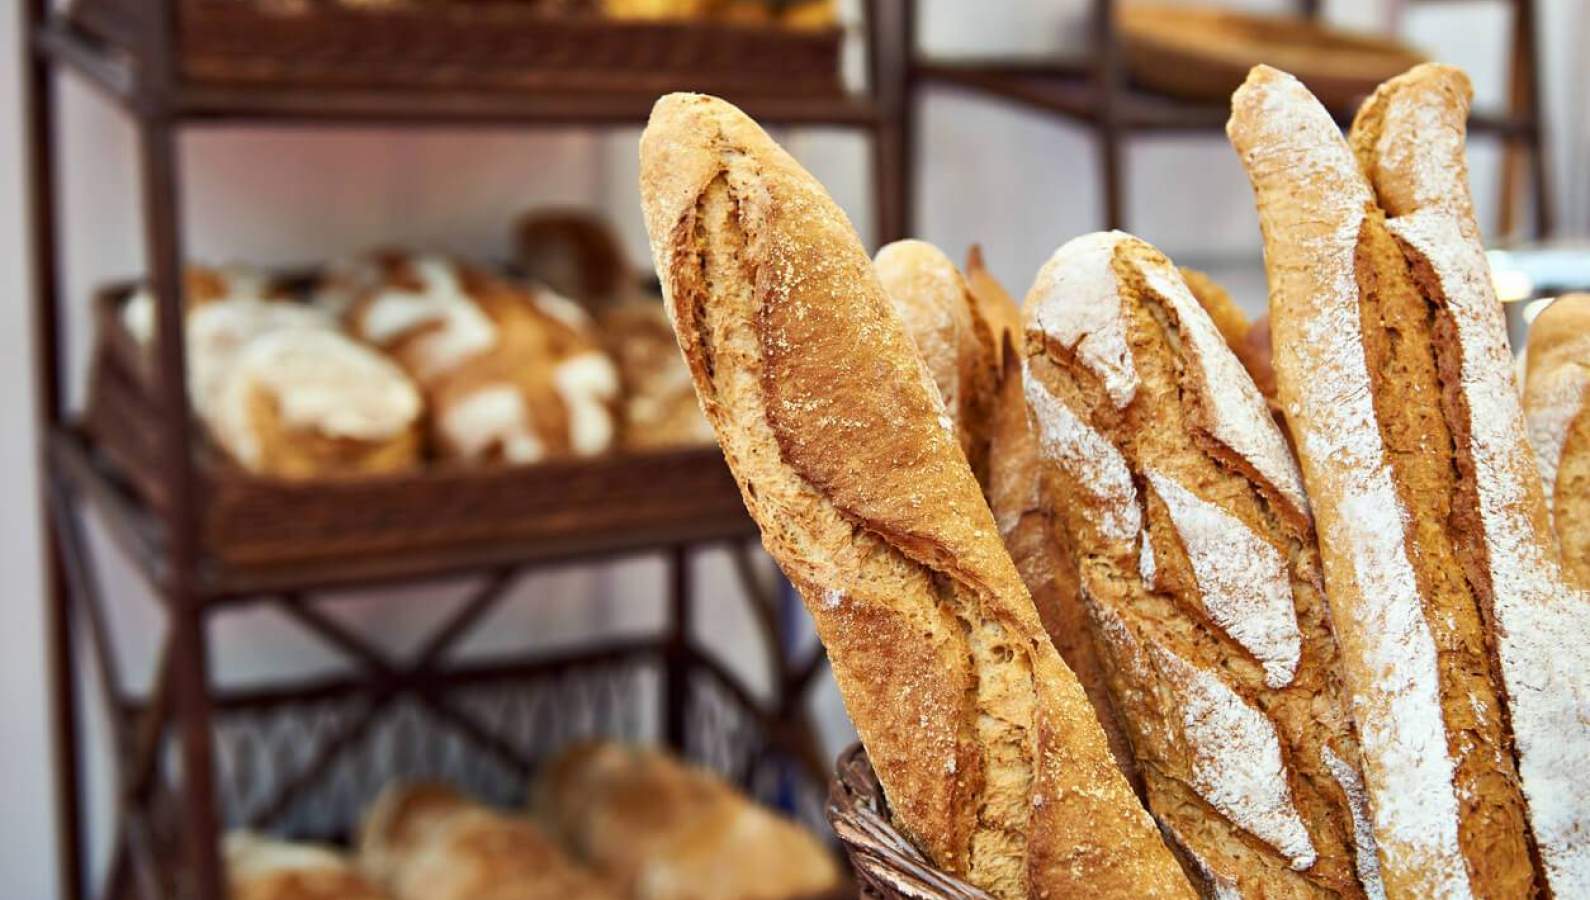 Comment reconnaître une vraie bonne baguette de pain ?